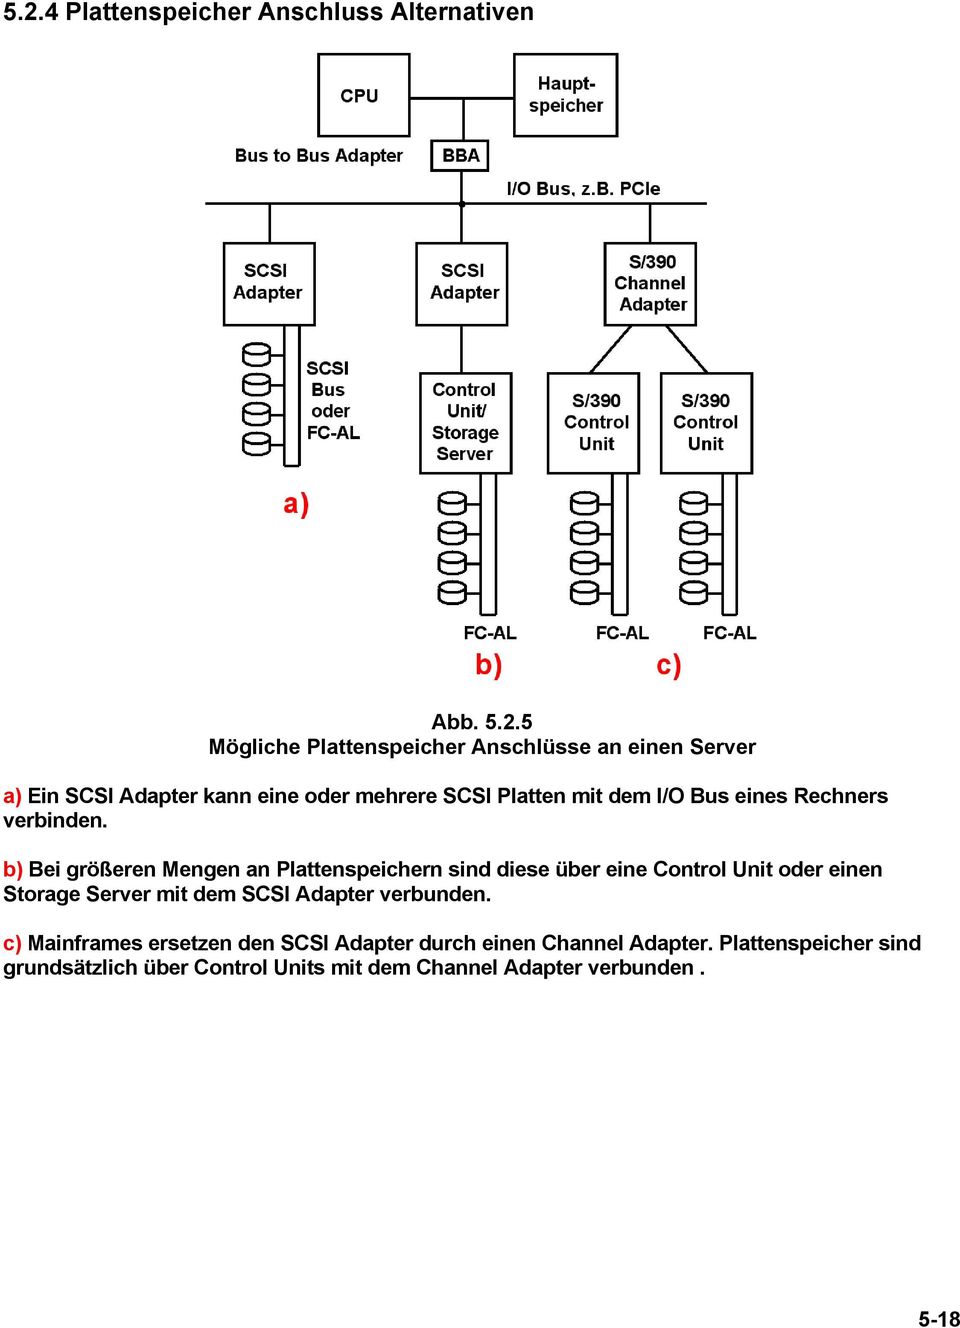 b) Bei größeren Mengen an Plattenspeichern sind diese über eine Control Unit oder einen Storage Server mit dem SCSI Adapter